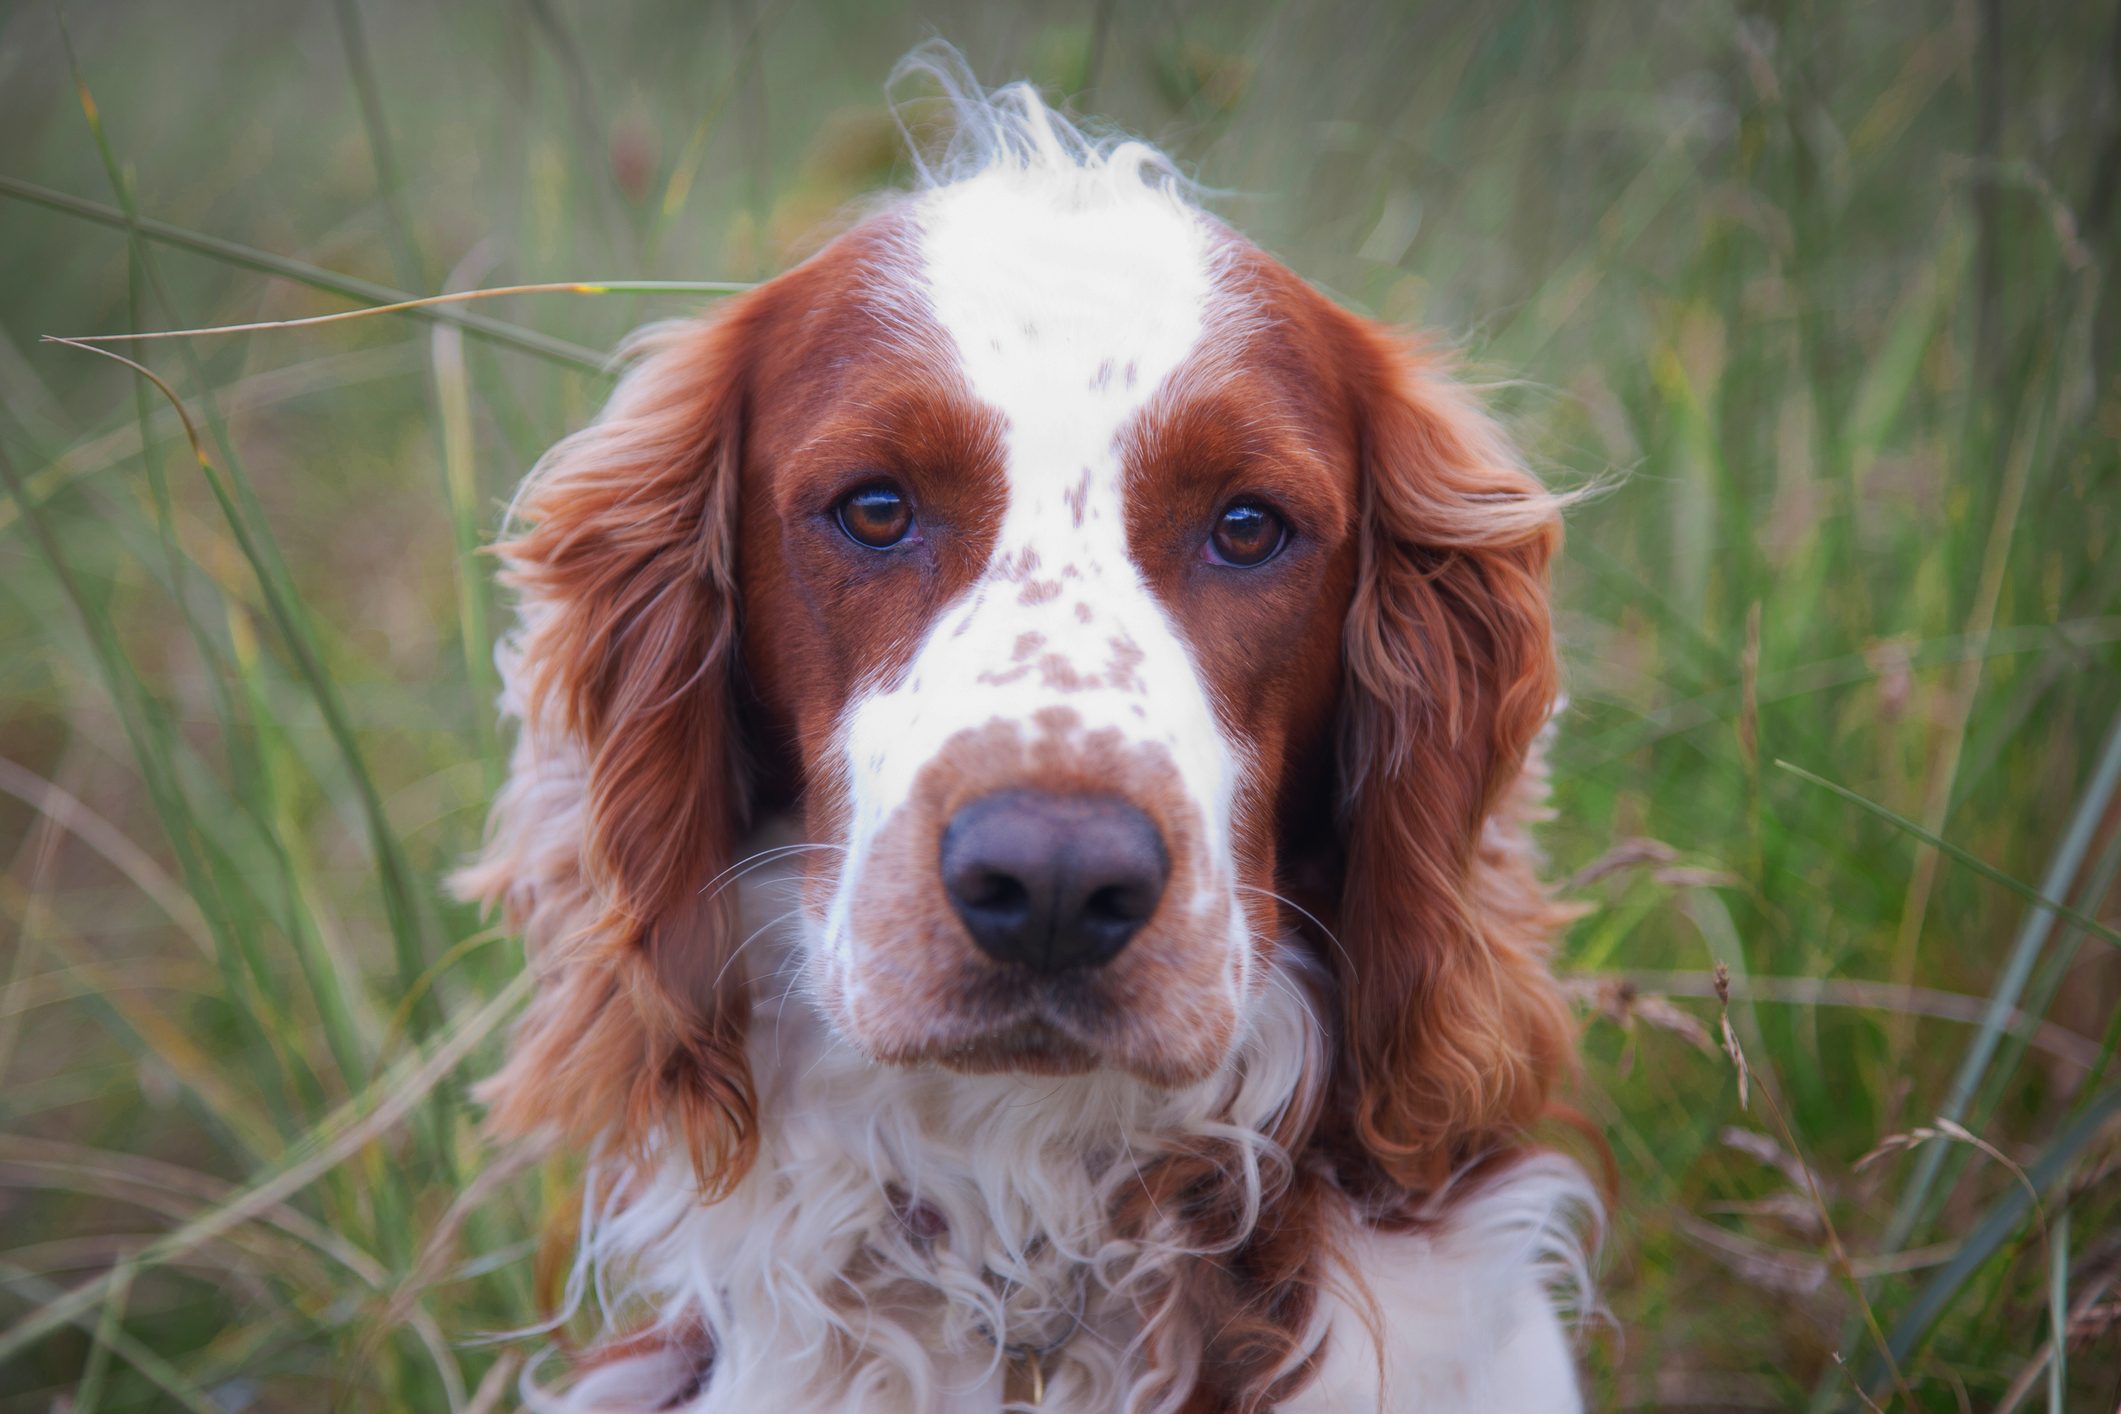 Welsh Springer Spaniel dog portrait looking at camera